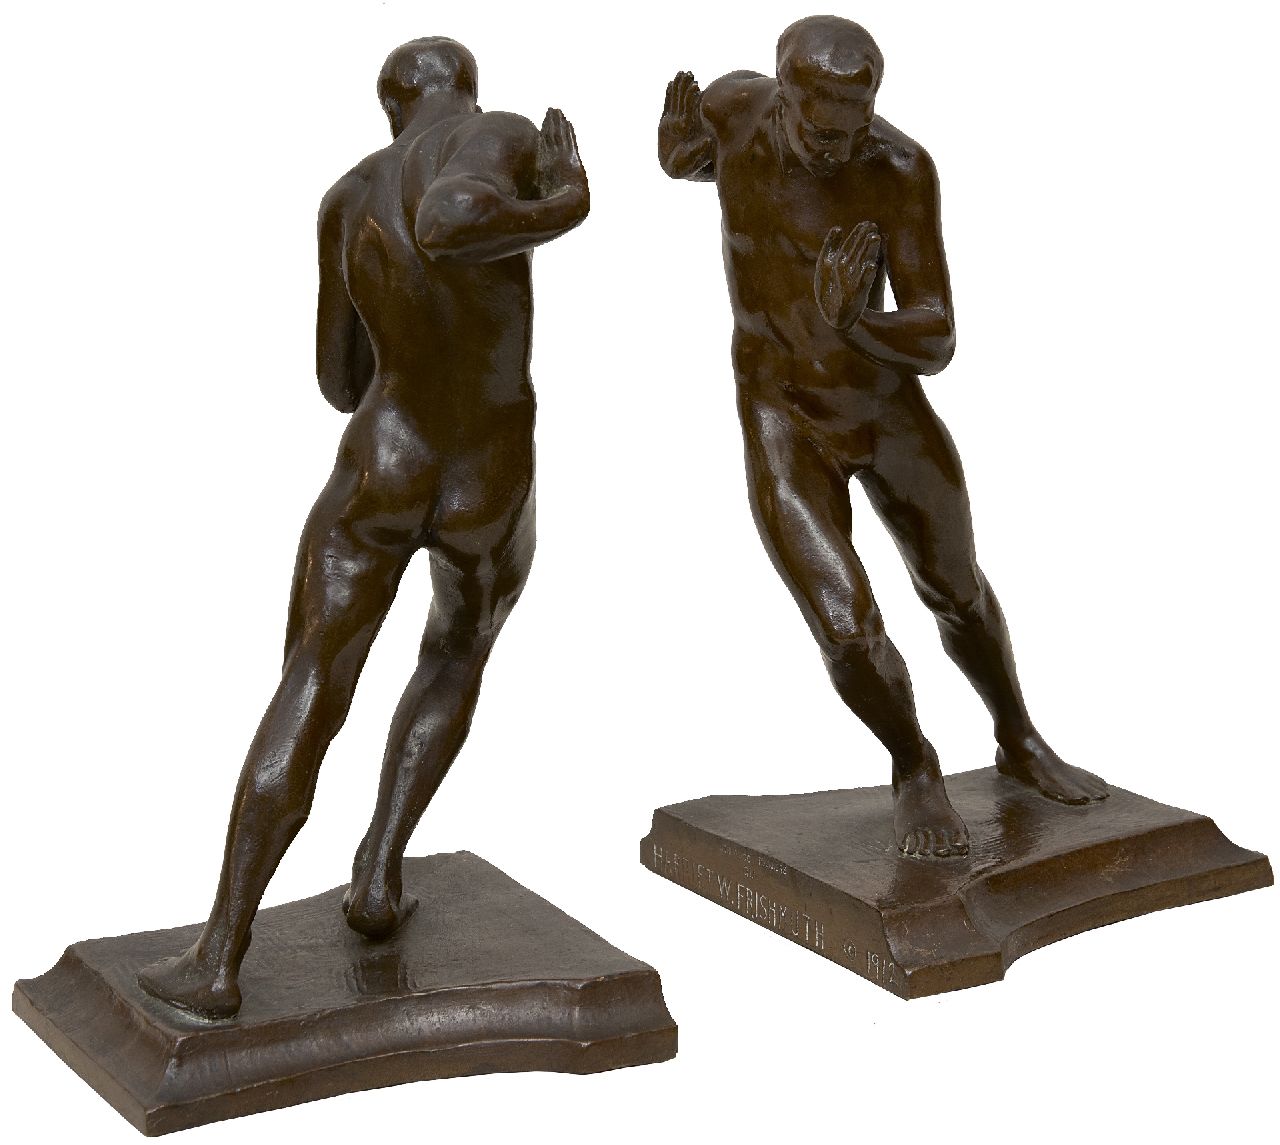 Harriet Withney Frishmuth | Duwende mannen, bruin gepatineerd brons, 19,7 x 11,0 cm, gesigneerd op zijkant basis en gedateerd op de basis 1912